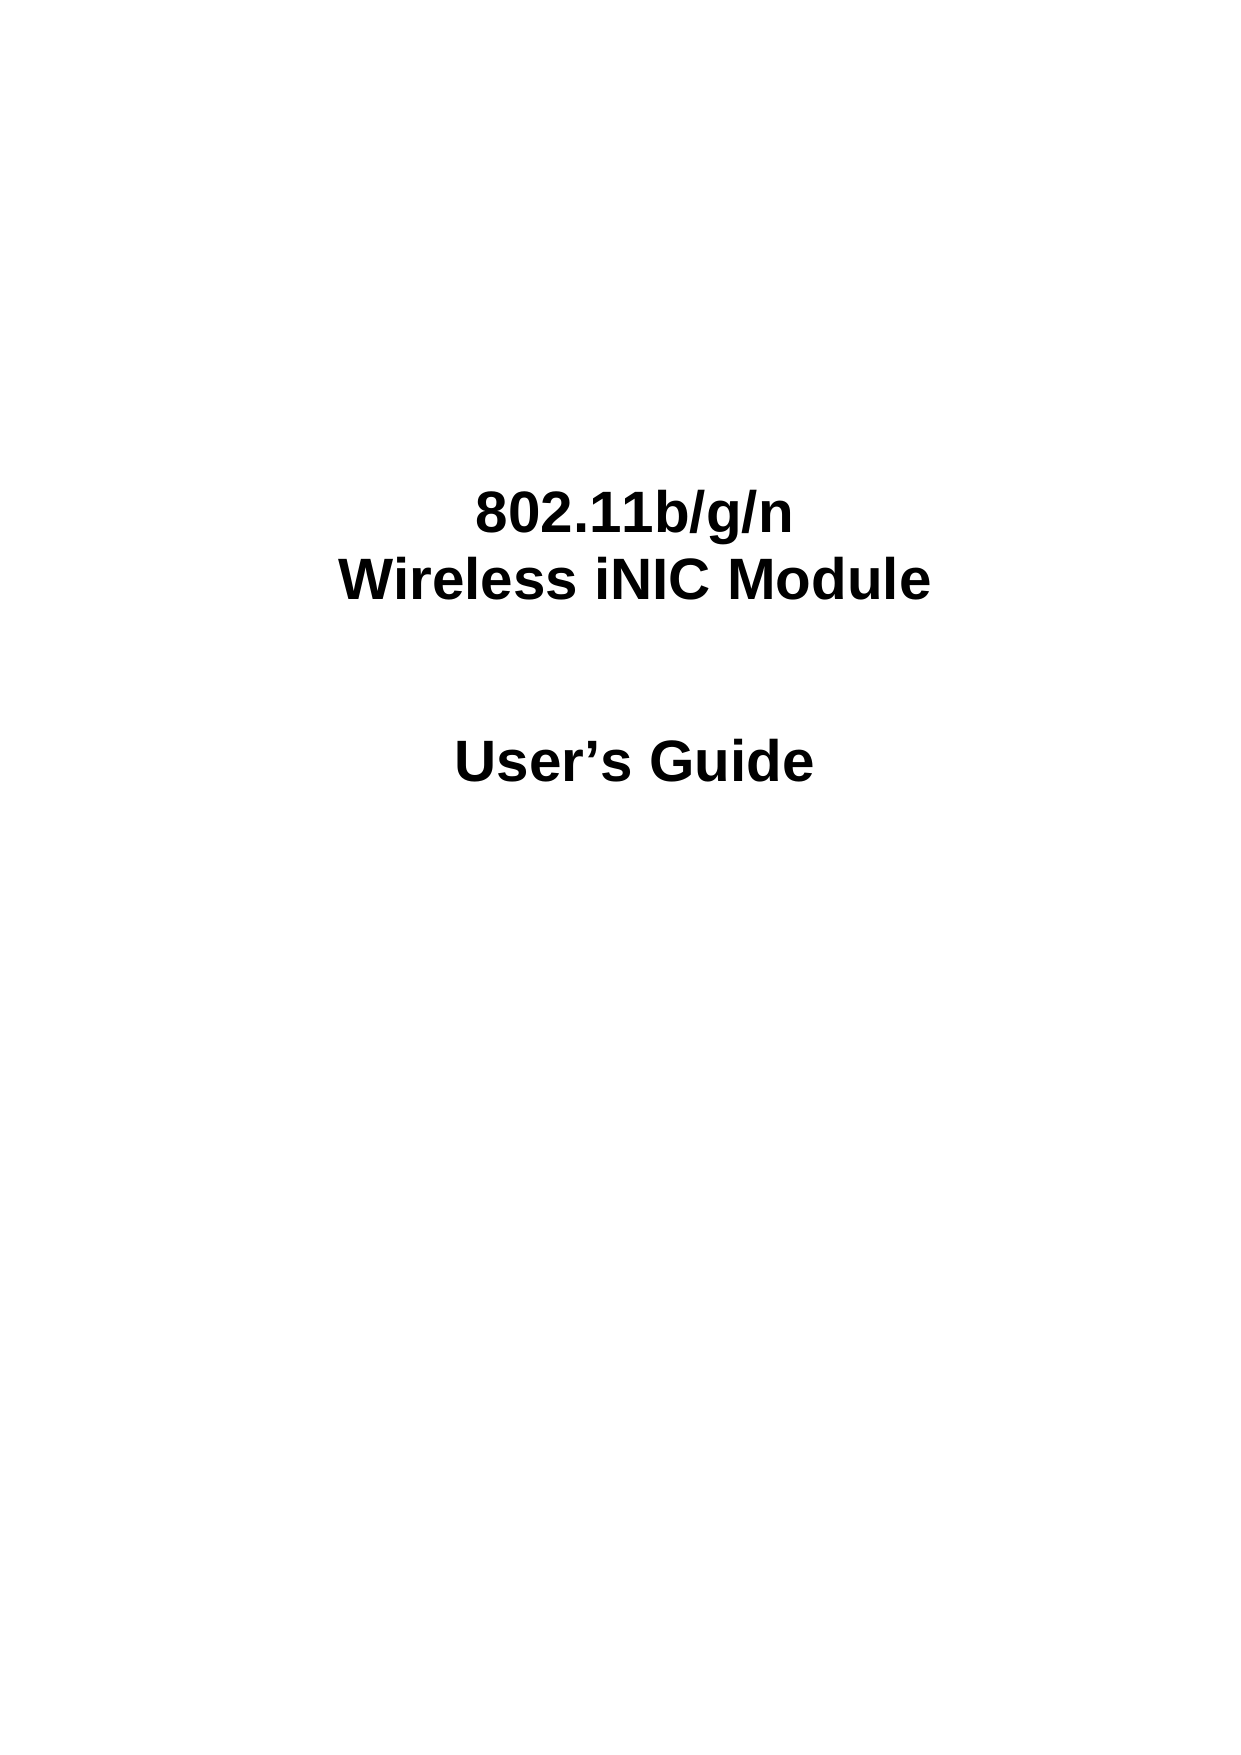                  802.11b/g/n Wireless iNIC Module    User’s Guide                            